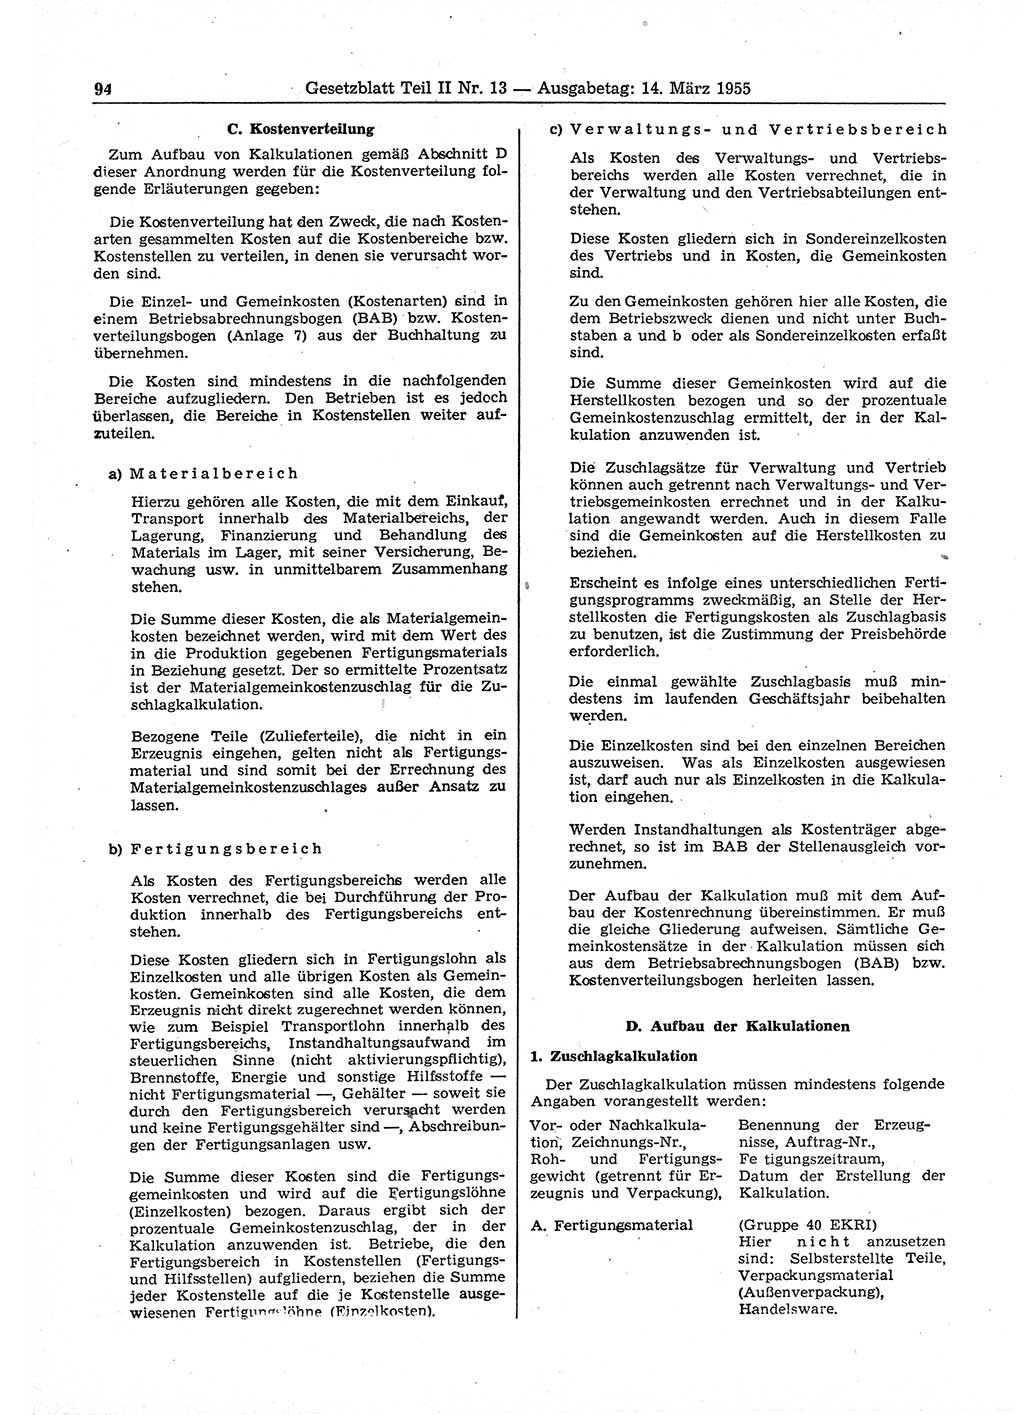 Gesetzblatt (GBl.) der Deutschen Demokratischen Republik (DDR) Teil ⅠⅠ 1955, Seite 94 (GBl. DDR ⅠⅠ 1955, S. 94)